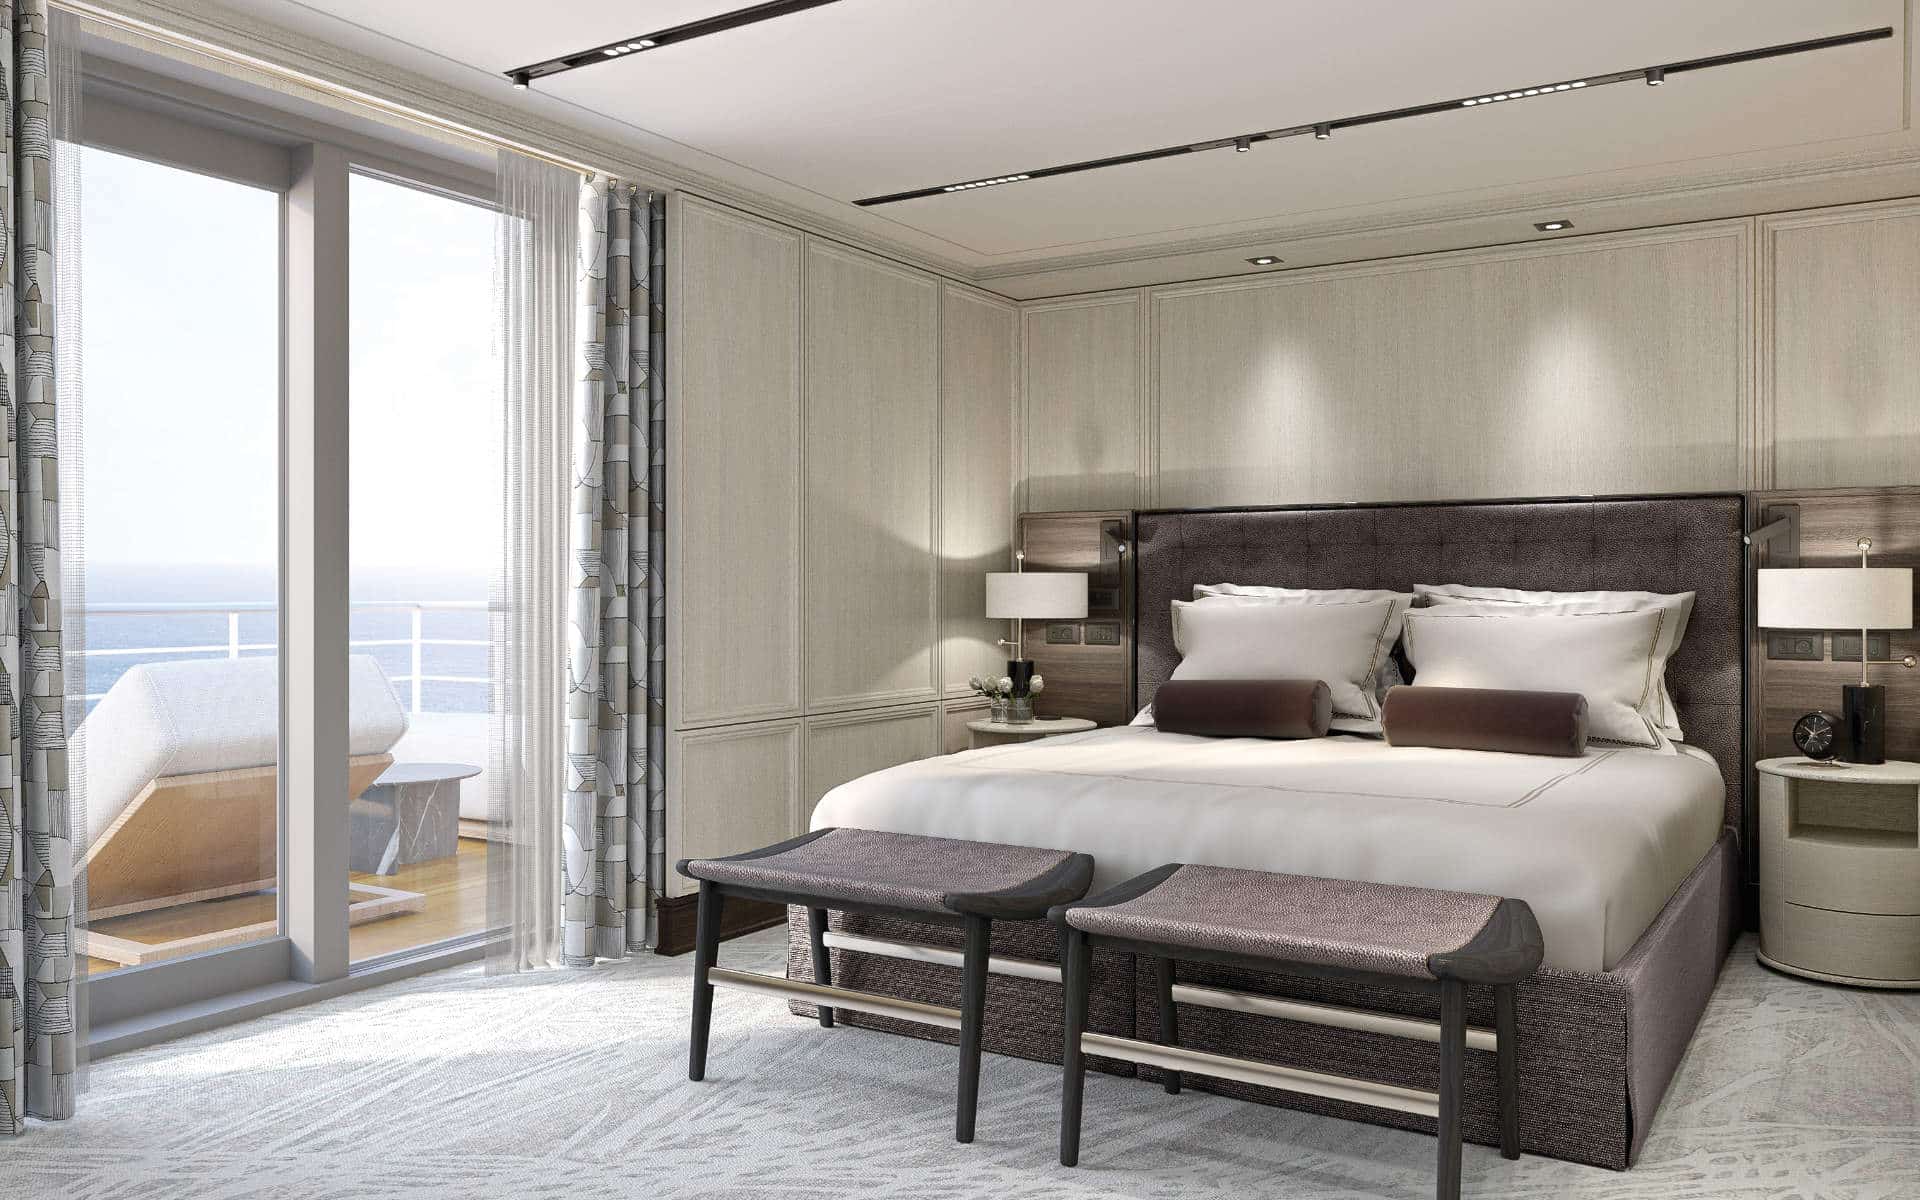 Seven Seas Grandeur Master Suite bedroom (rendering).